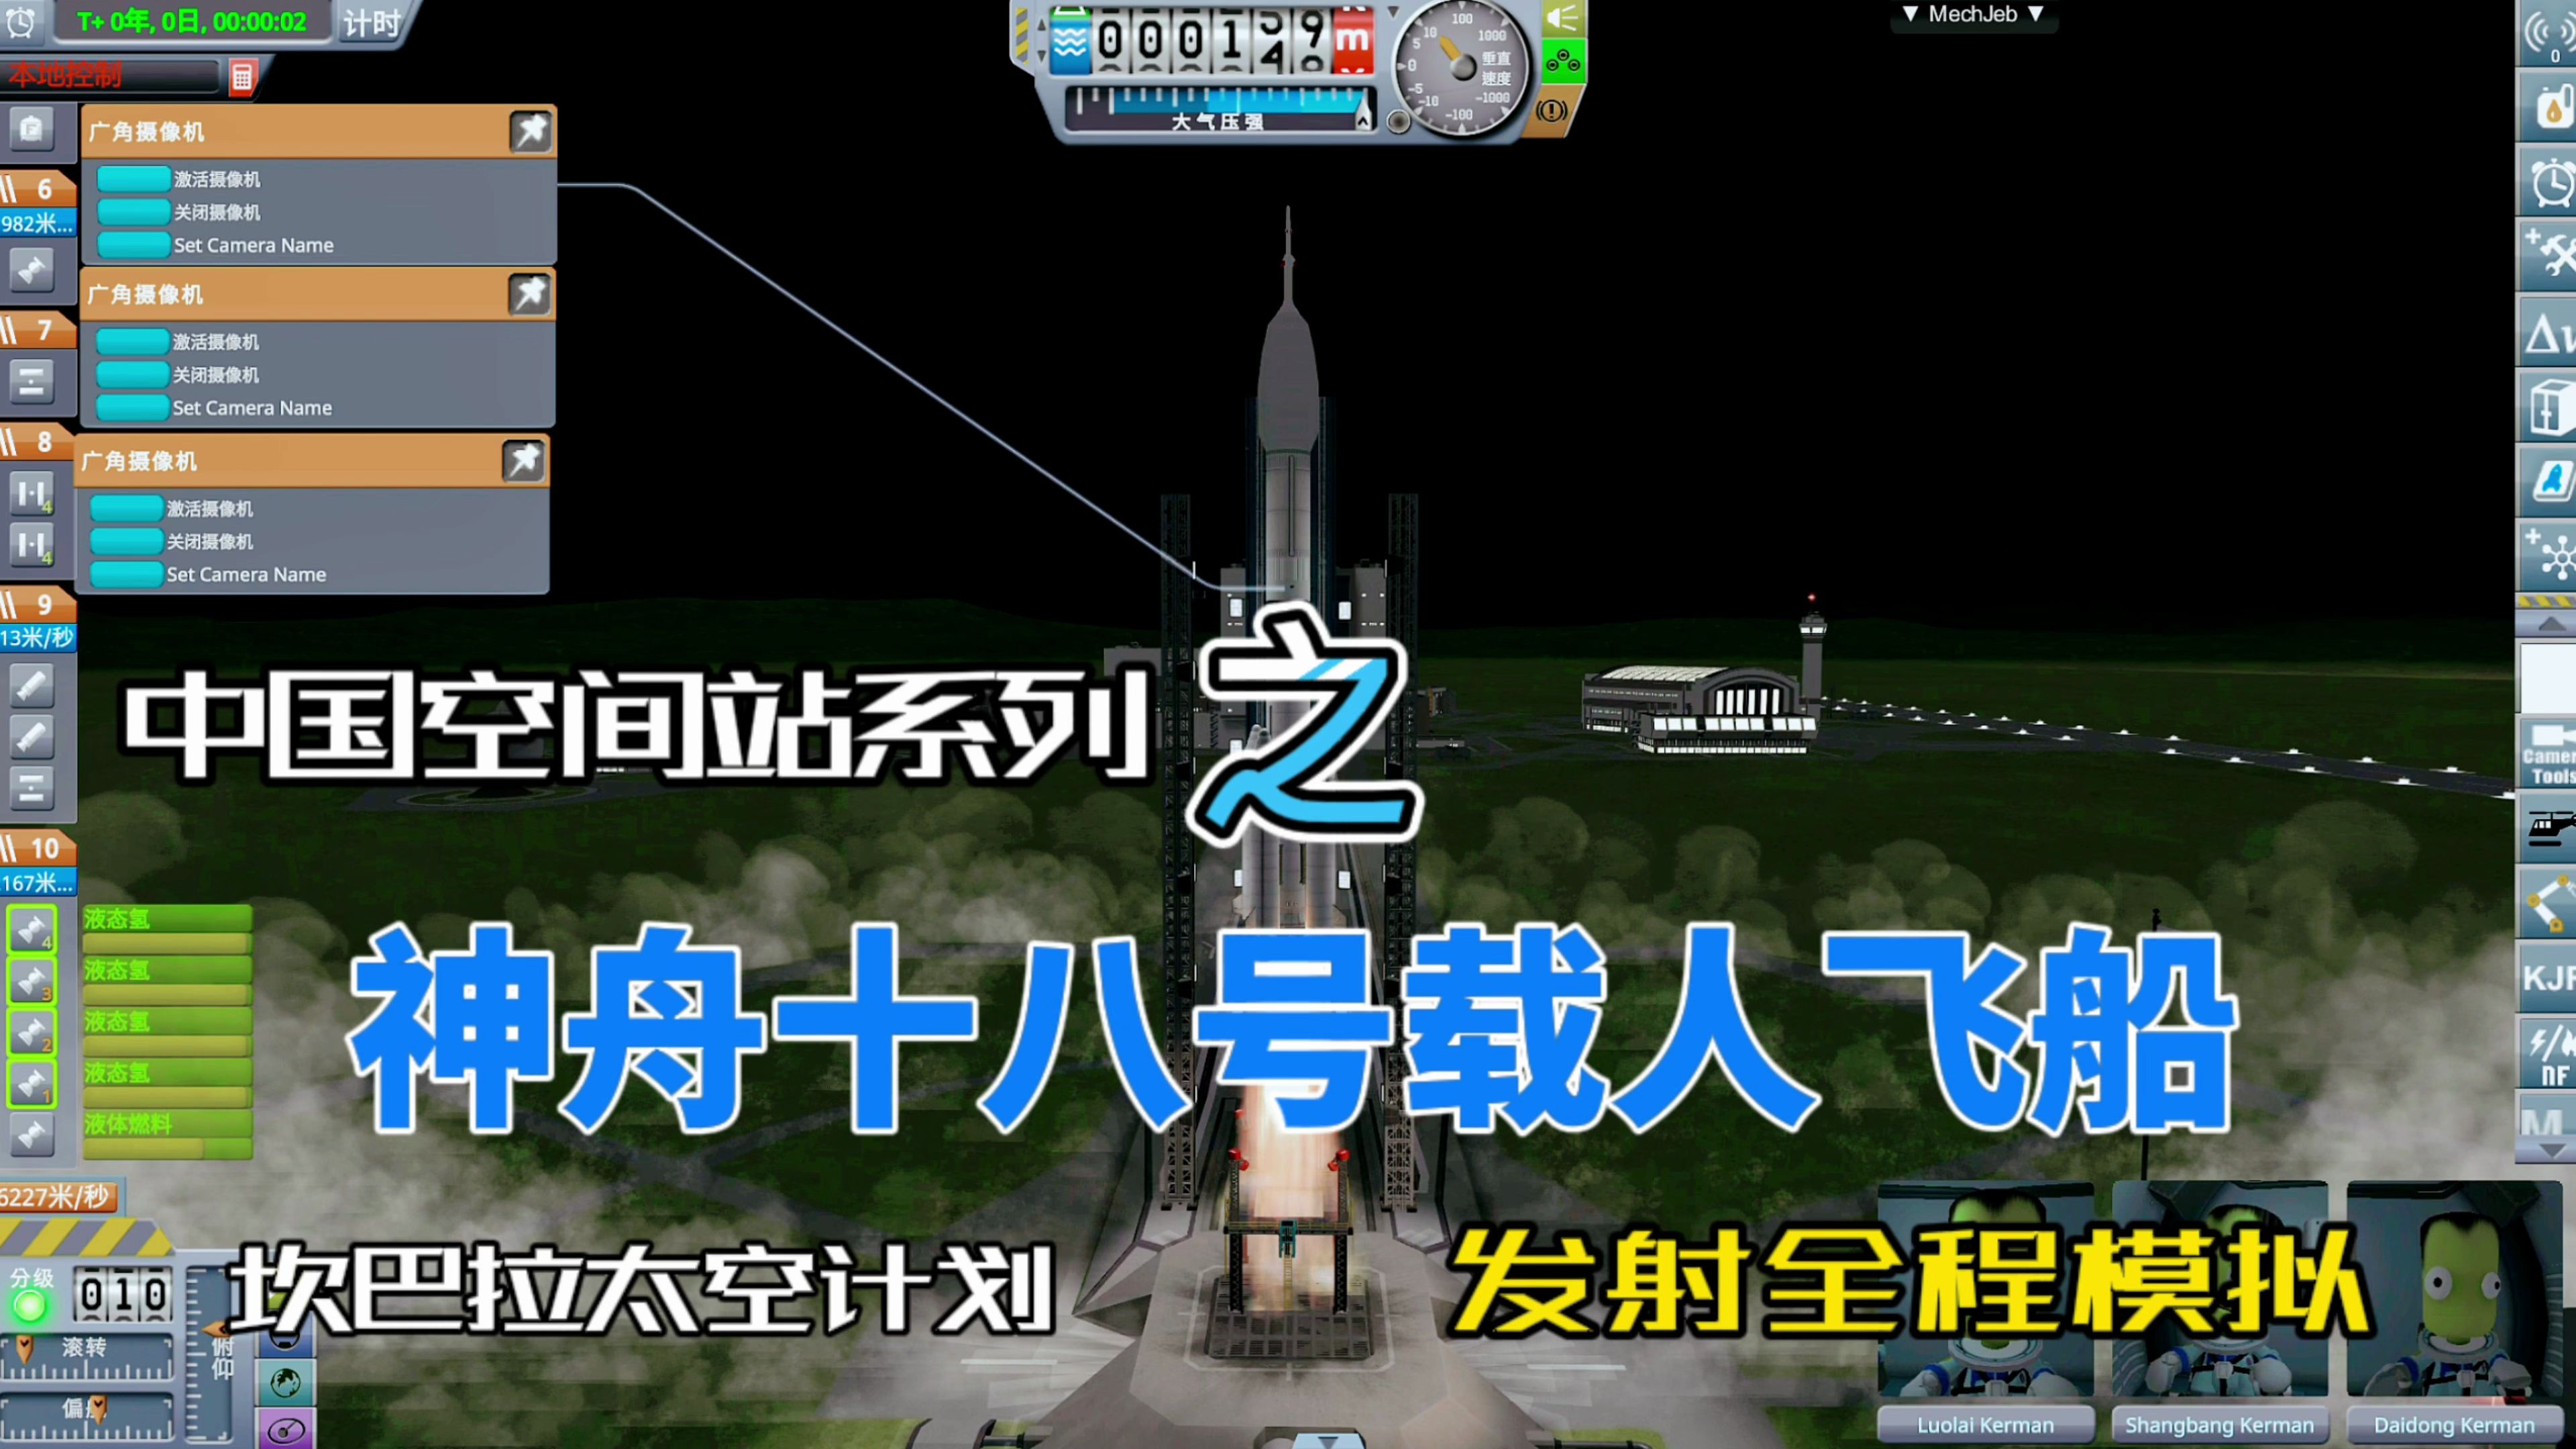 【KSP】坎巴拉太空计划中国空间站系列之神舟十八号载人飞船发射